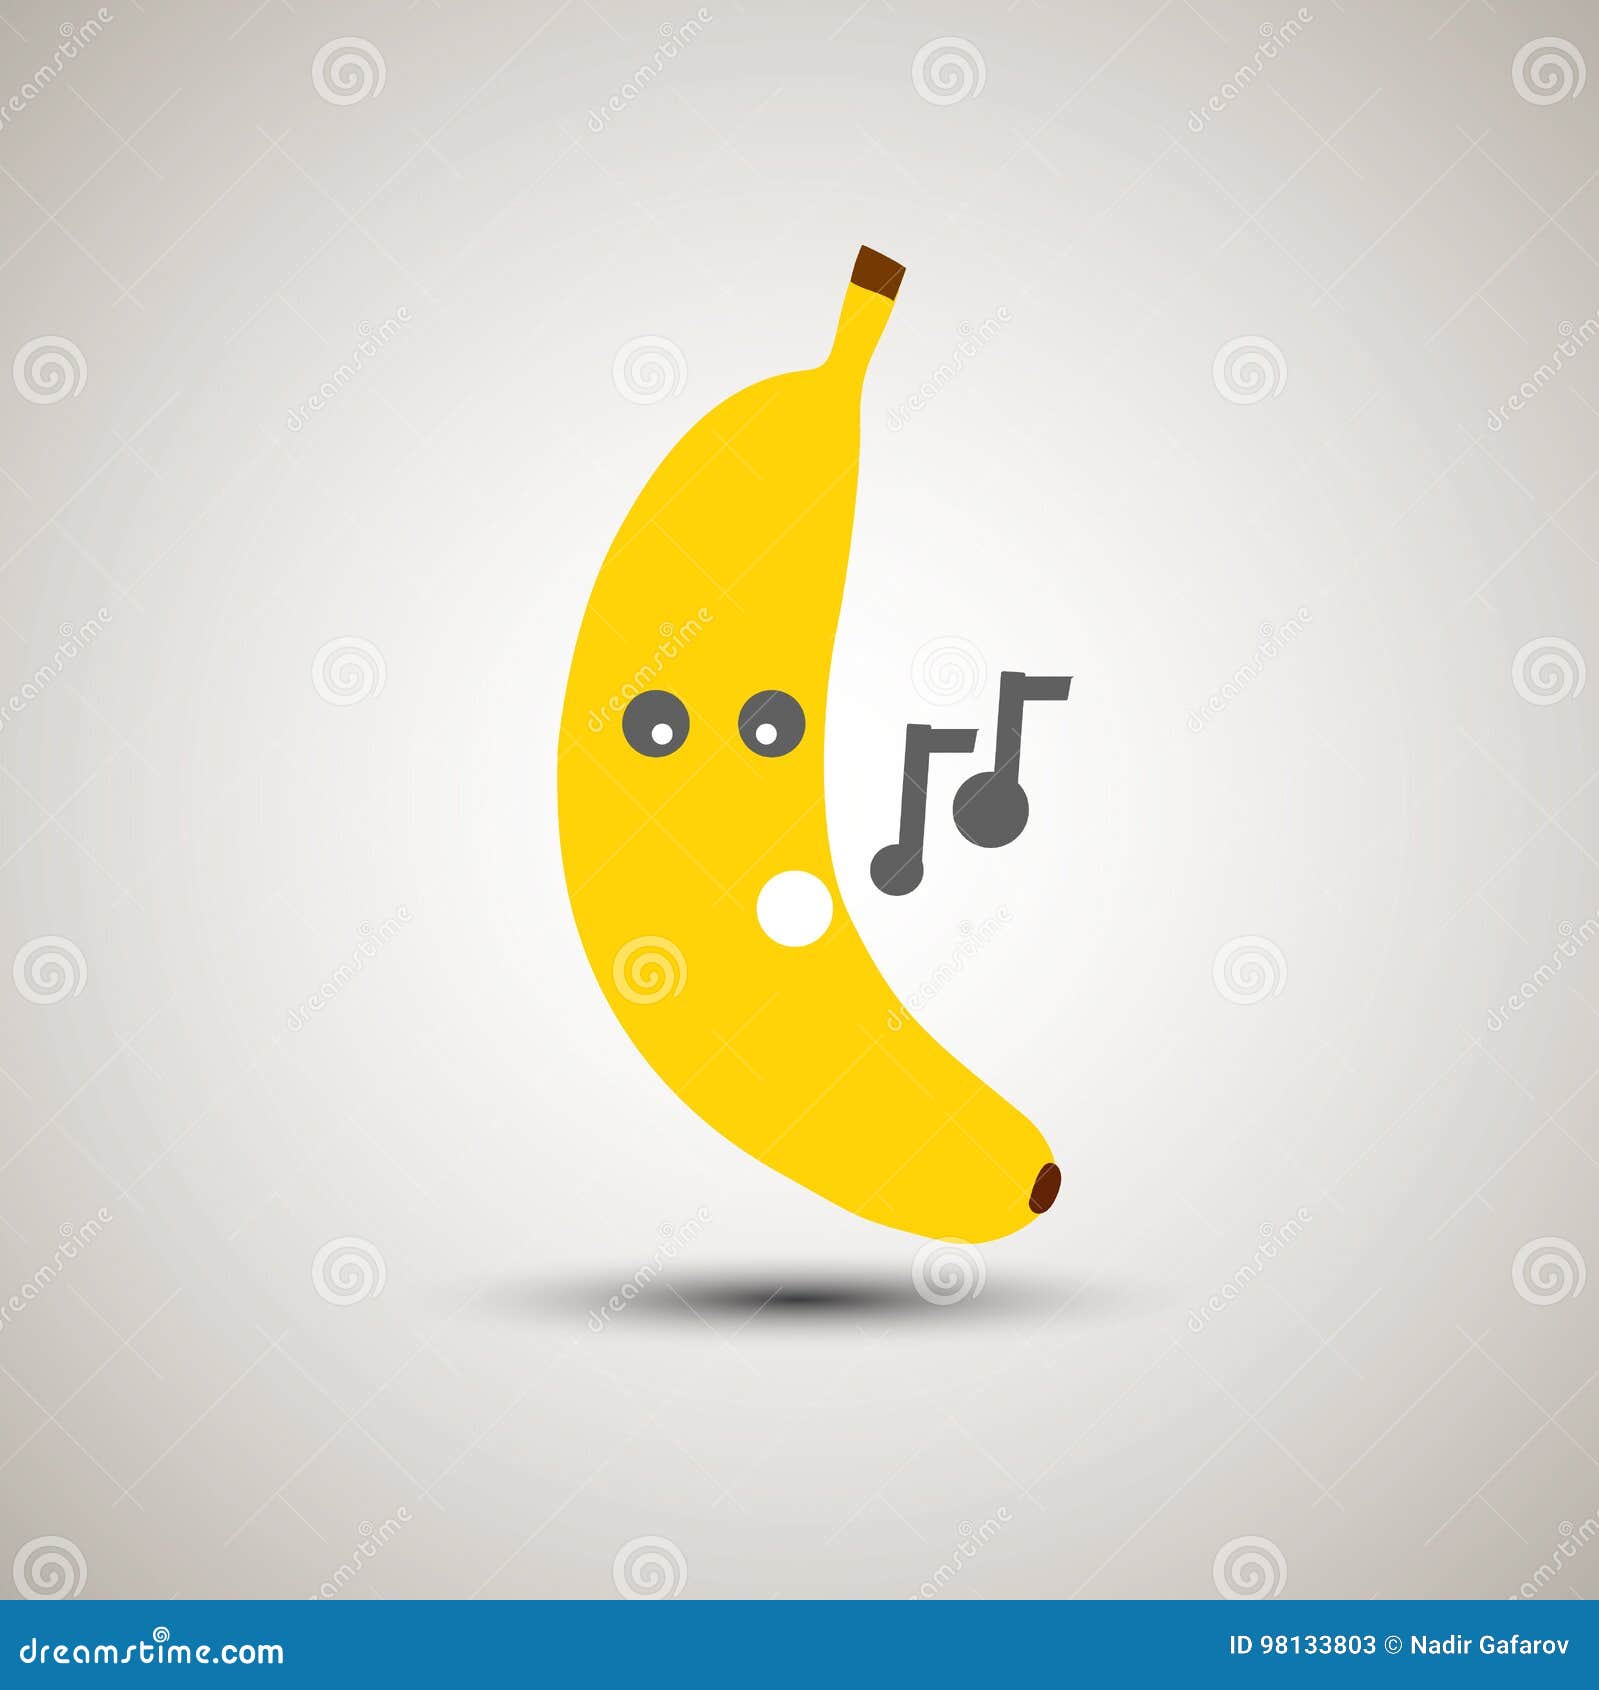 Yellow Banana Emoji Singing A Song. Stock Vector - Illustration Of.